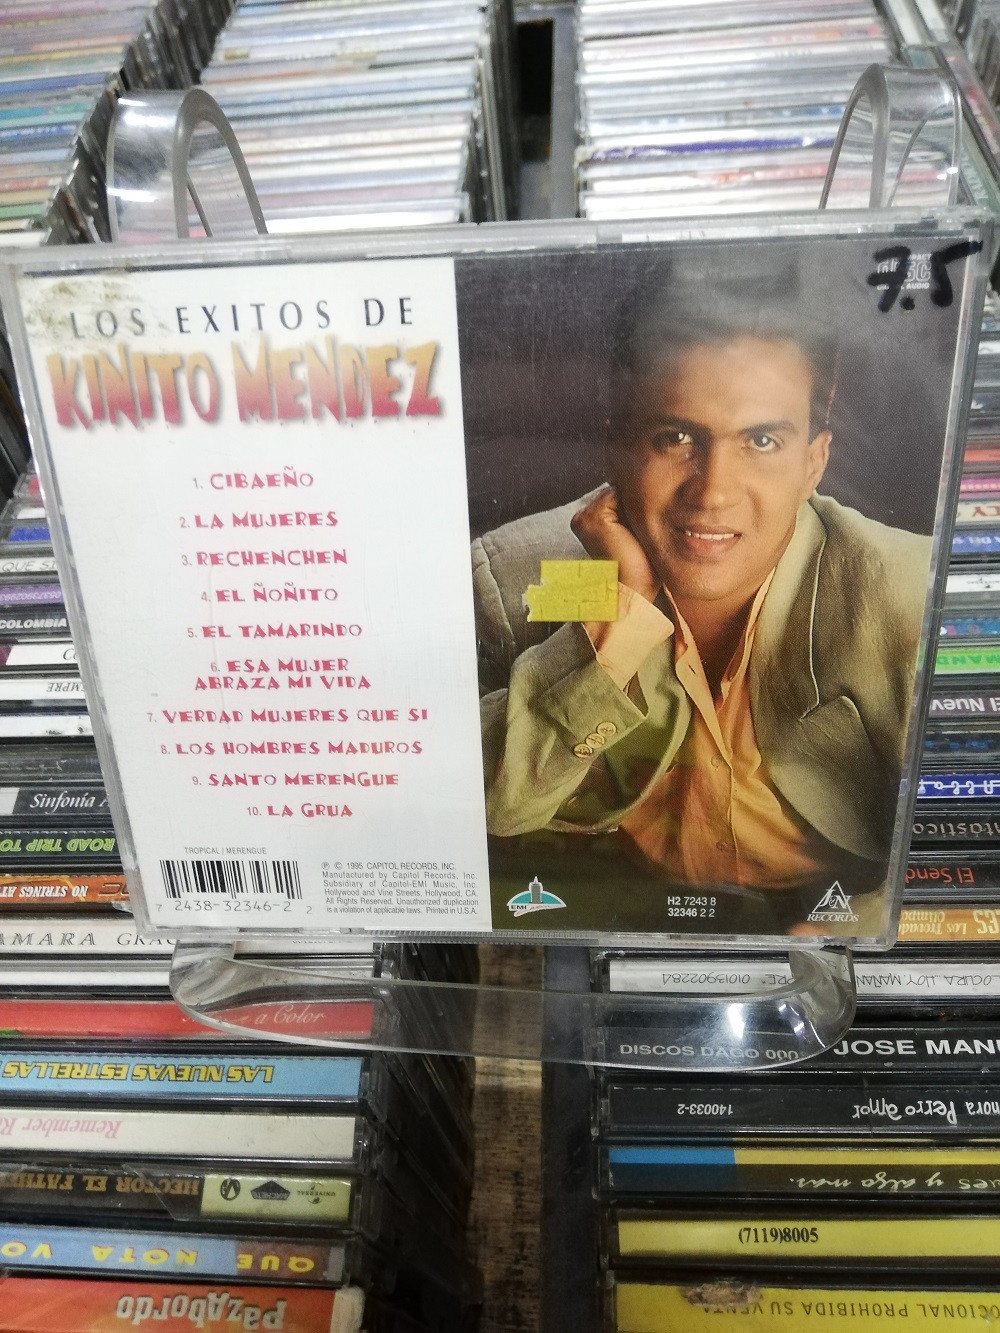 Imagen CD KINITO MENDEZ - LOS EXITOS DE KINITO MENDEZ 2